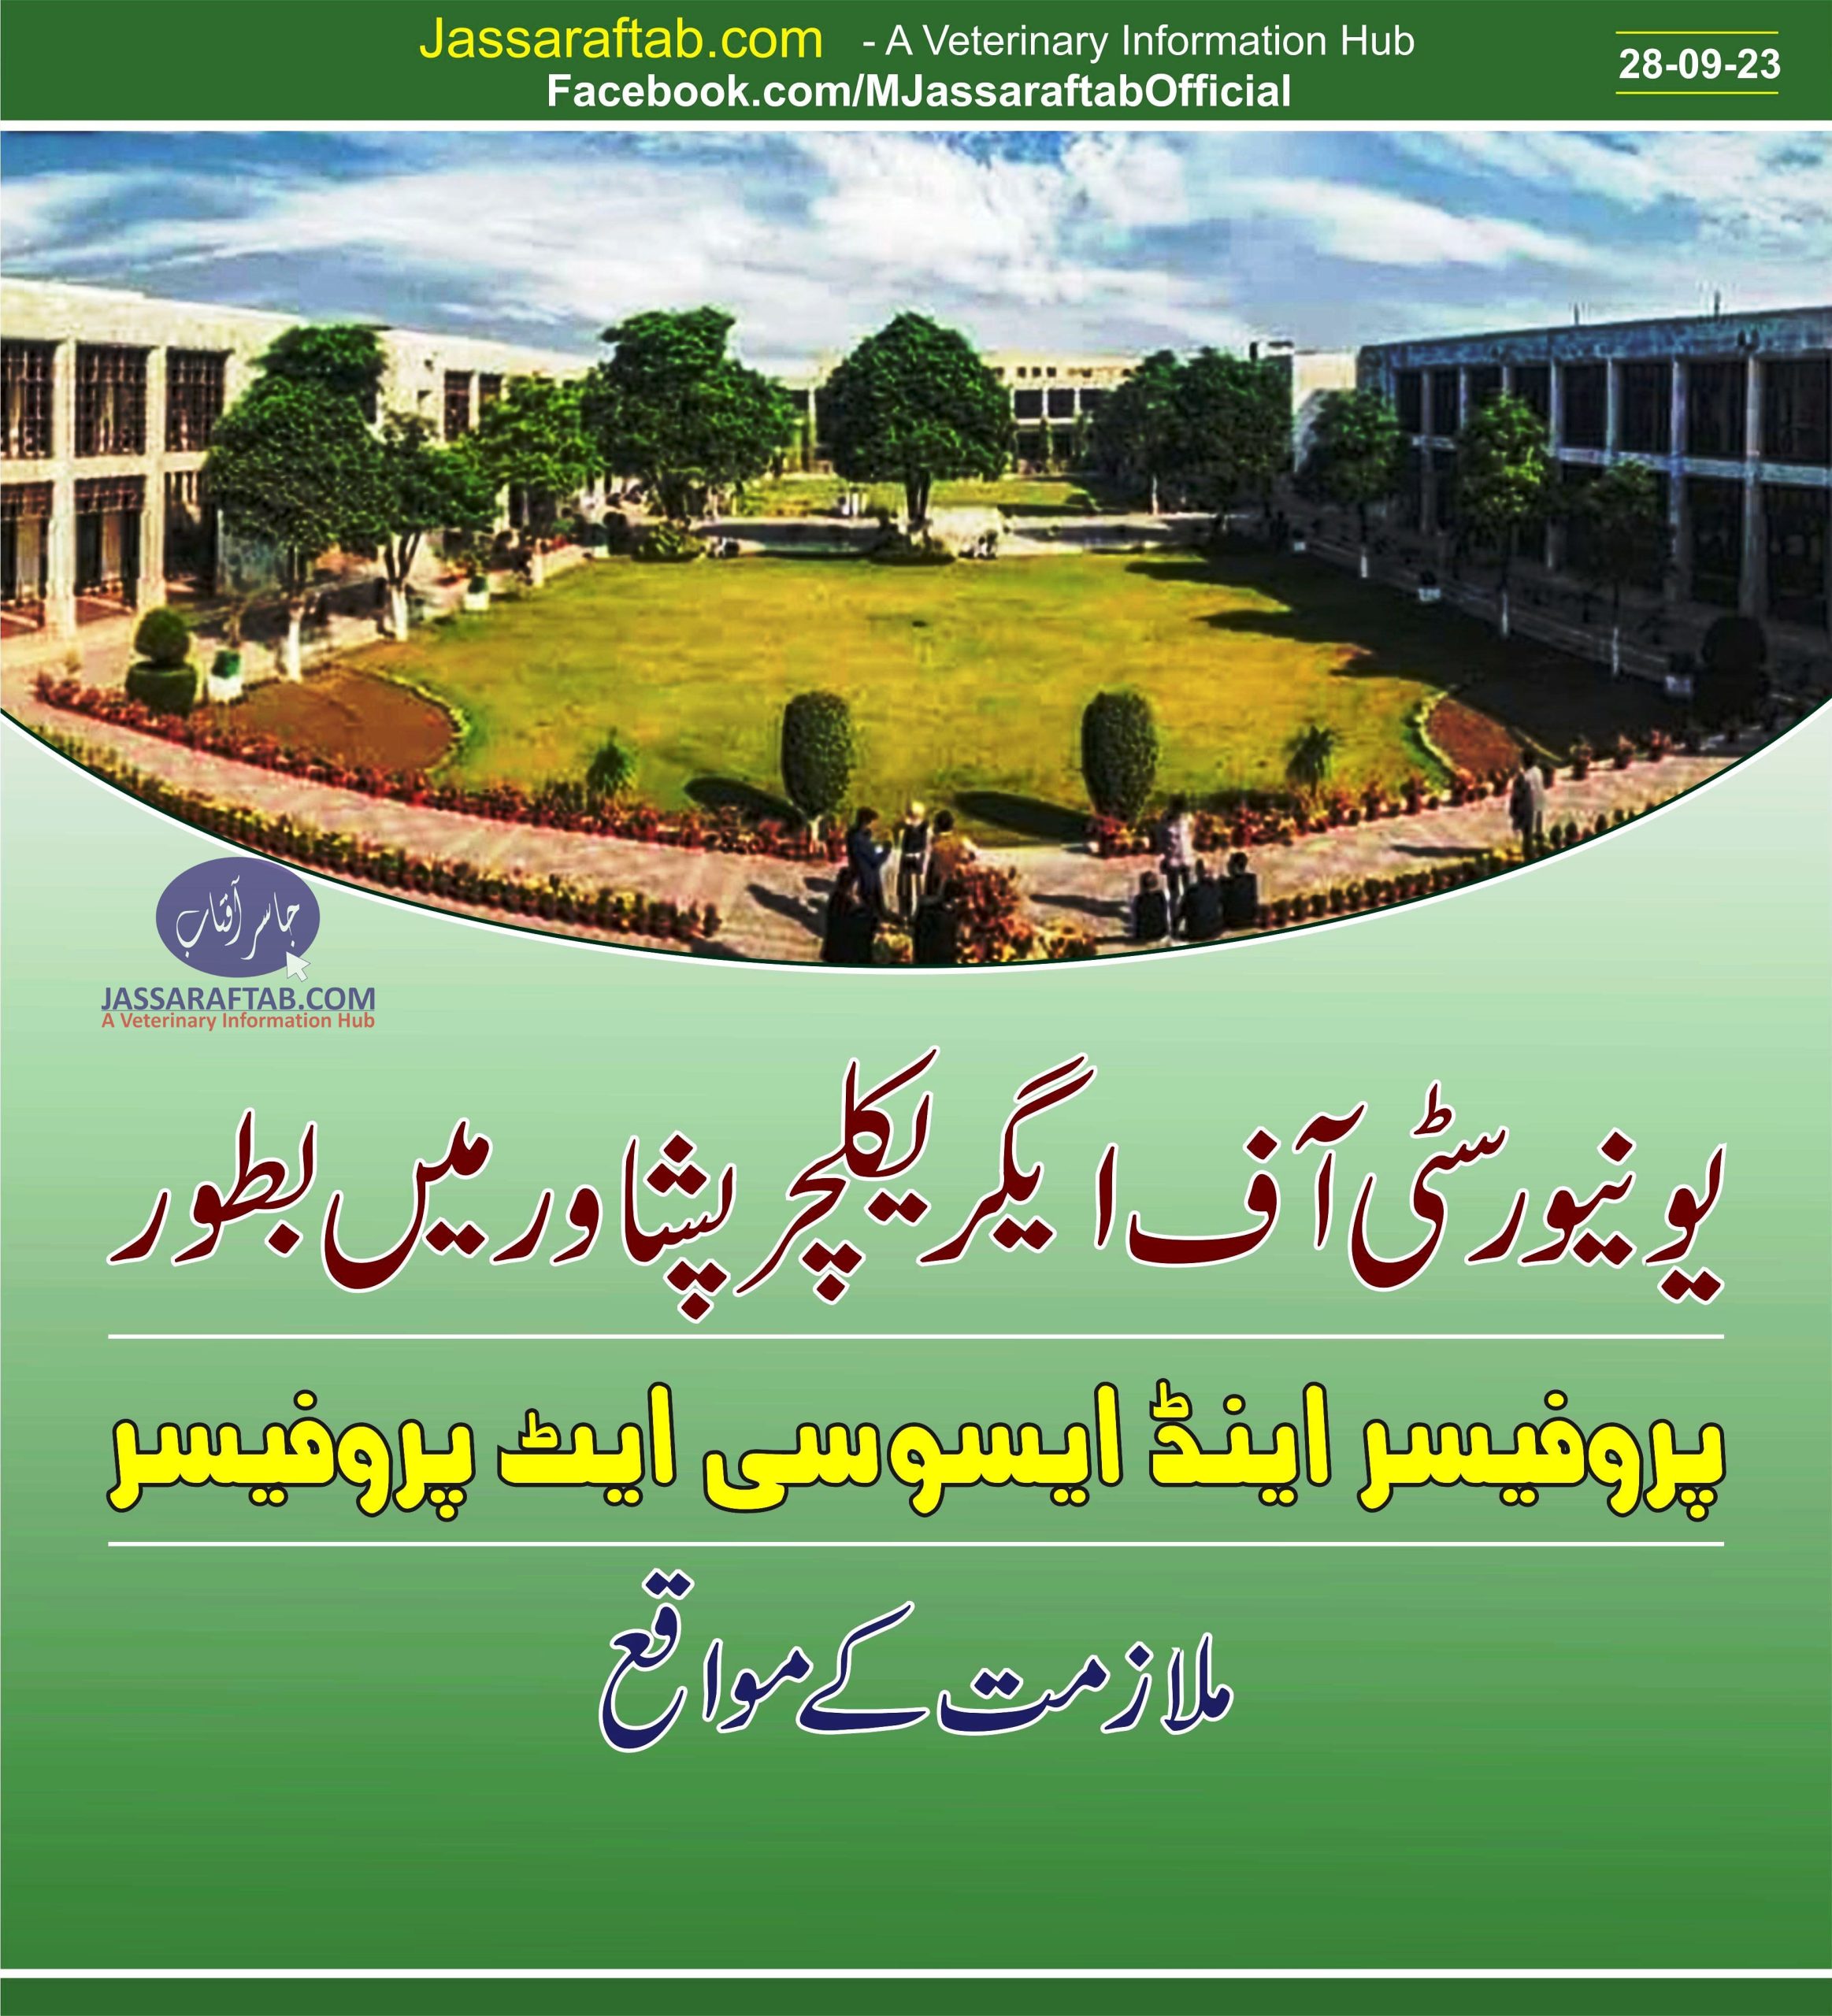 یونیورسٹی آف ایگریکلچر پشاور میں بطور پروفیسر اینڈ ایسوسی ایٹ پروفیسر ملازمت کے مواقع